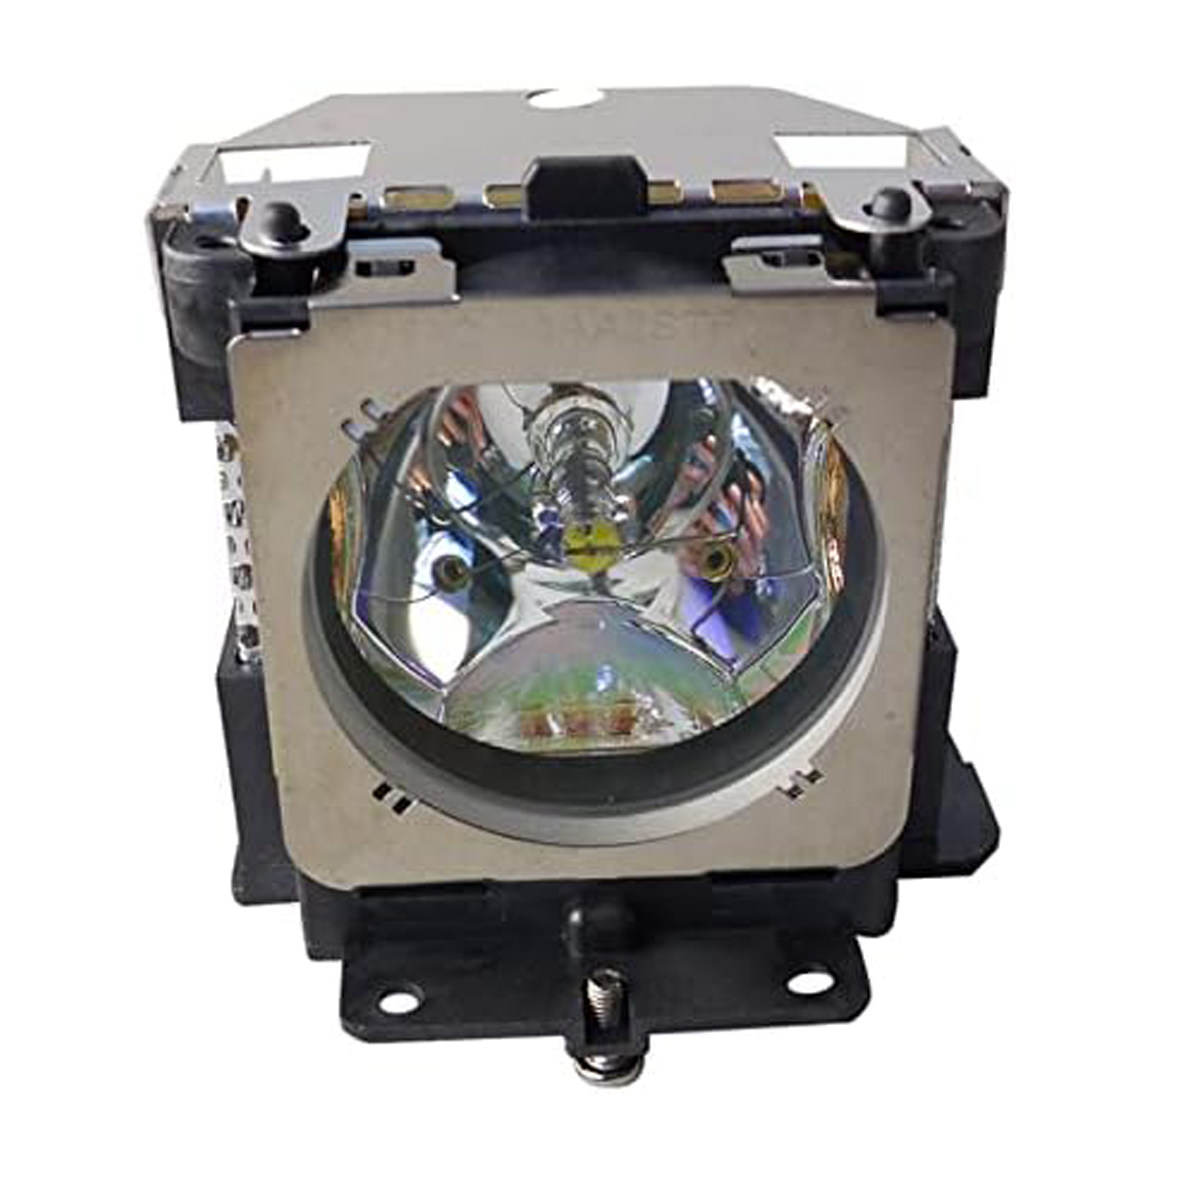 Replacement Projector lamp POA-LMP121  For Sanyo PLC-XE50 PLC-XK450 PLC-XL50 PLC-XL51